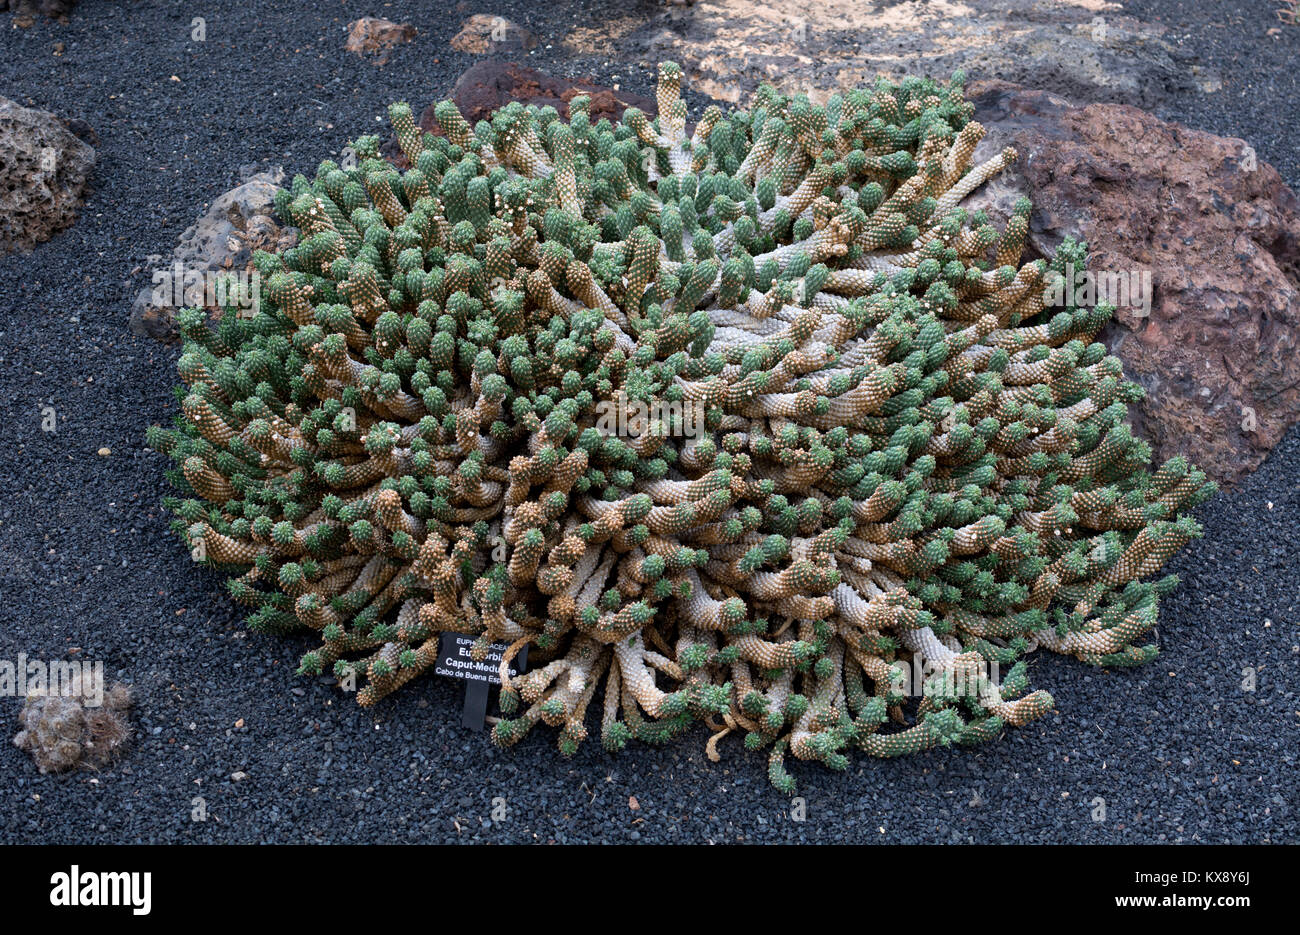 Euphorbia caput-medusae, Jardin de Cactus, Guatiza, Lanzarote, Canary Islands, Spain. Stock Photo